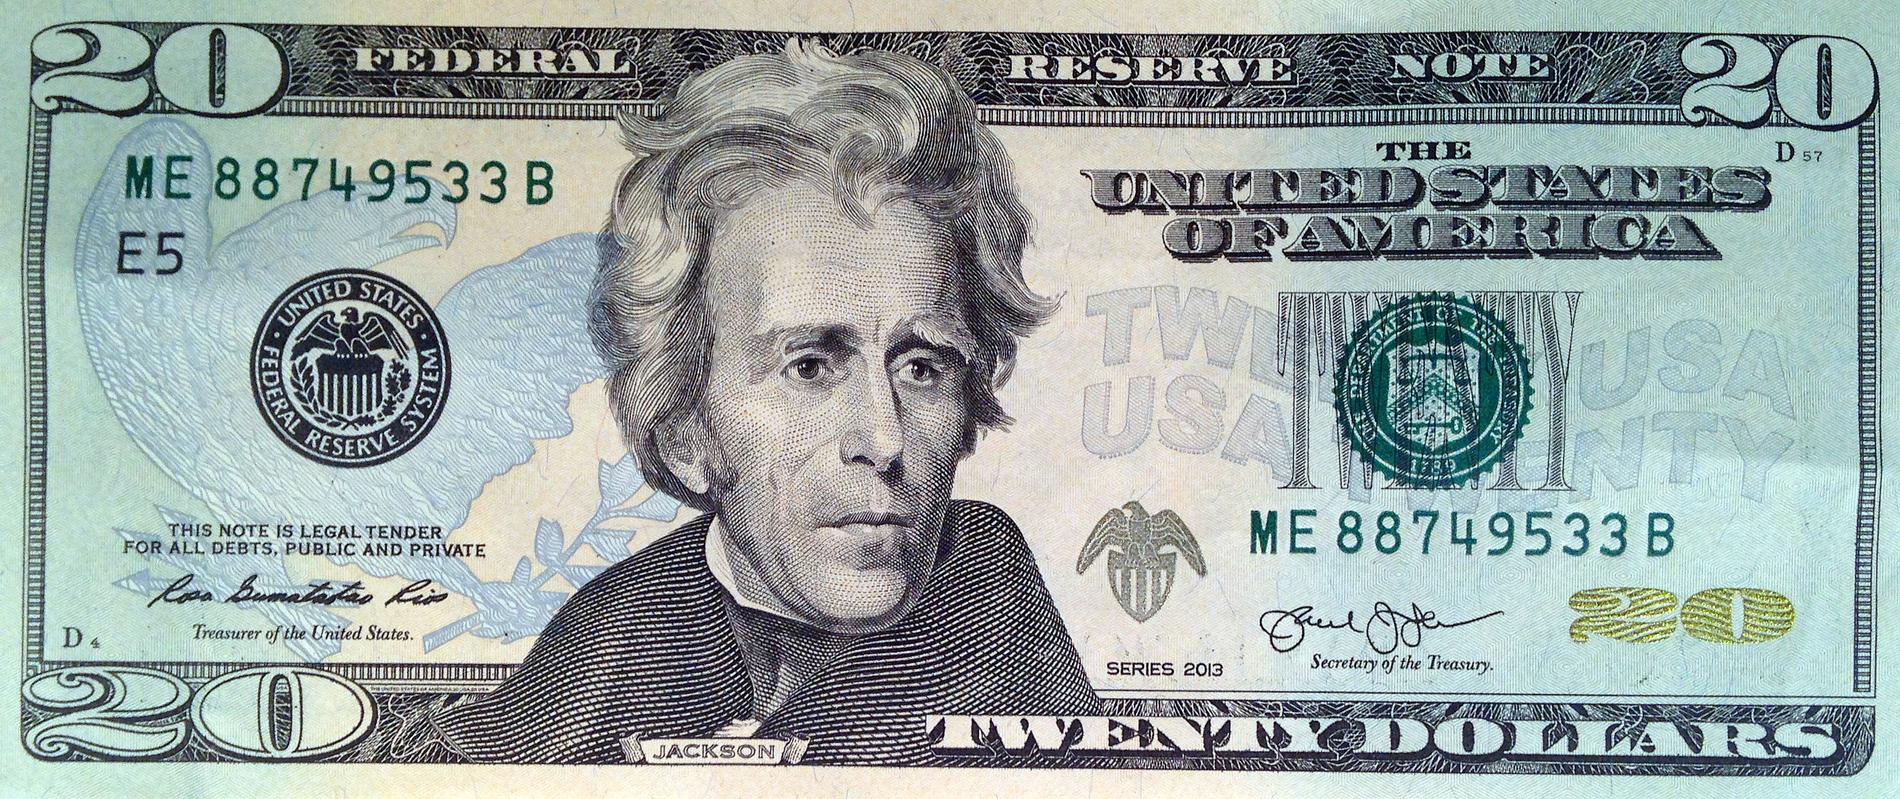 USA:s sjunde president Andrew Jackson, revolutionshjälten som pryder dagens 20-dollarsedel, var själv slavägare. Arkivbild.